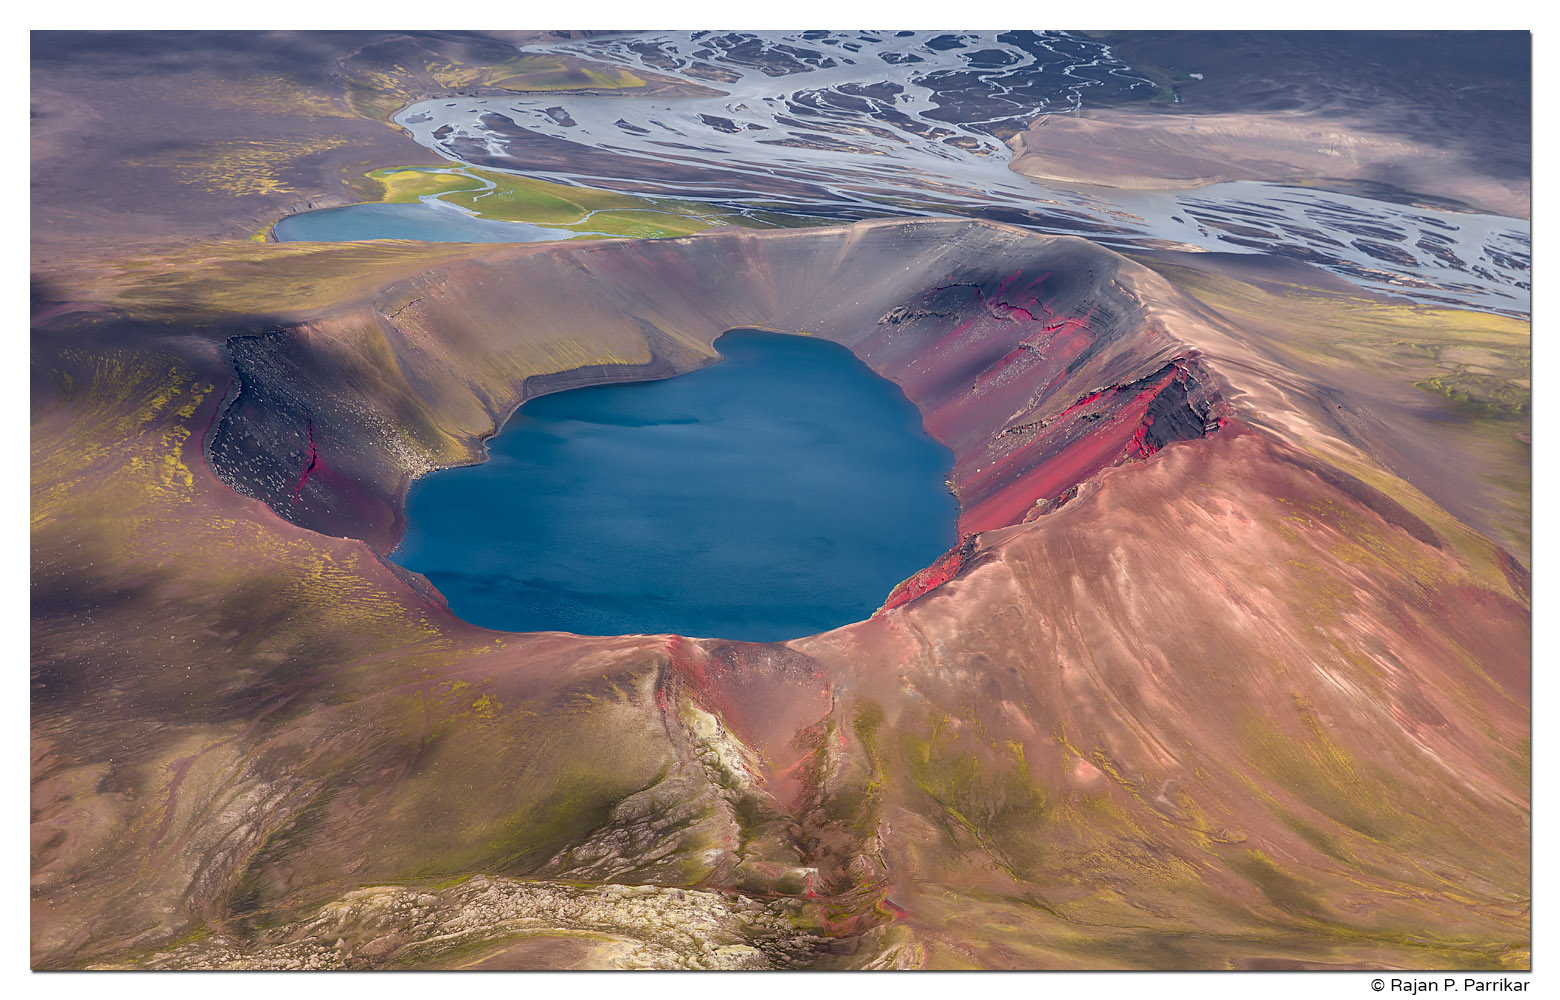 Ljótipollur, Crater, Lake, Highlands, Iceland